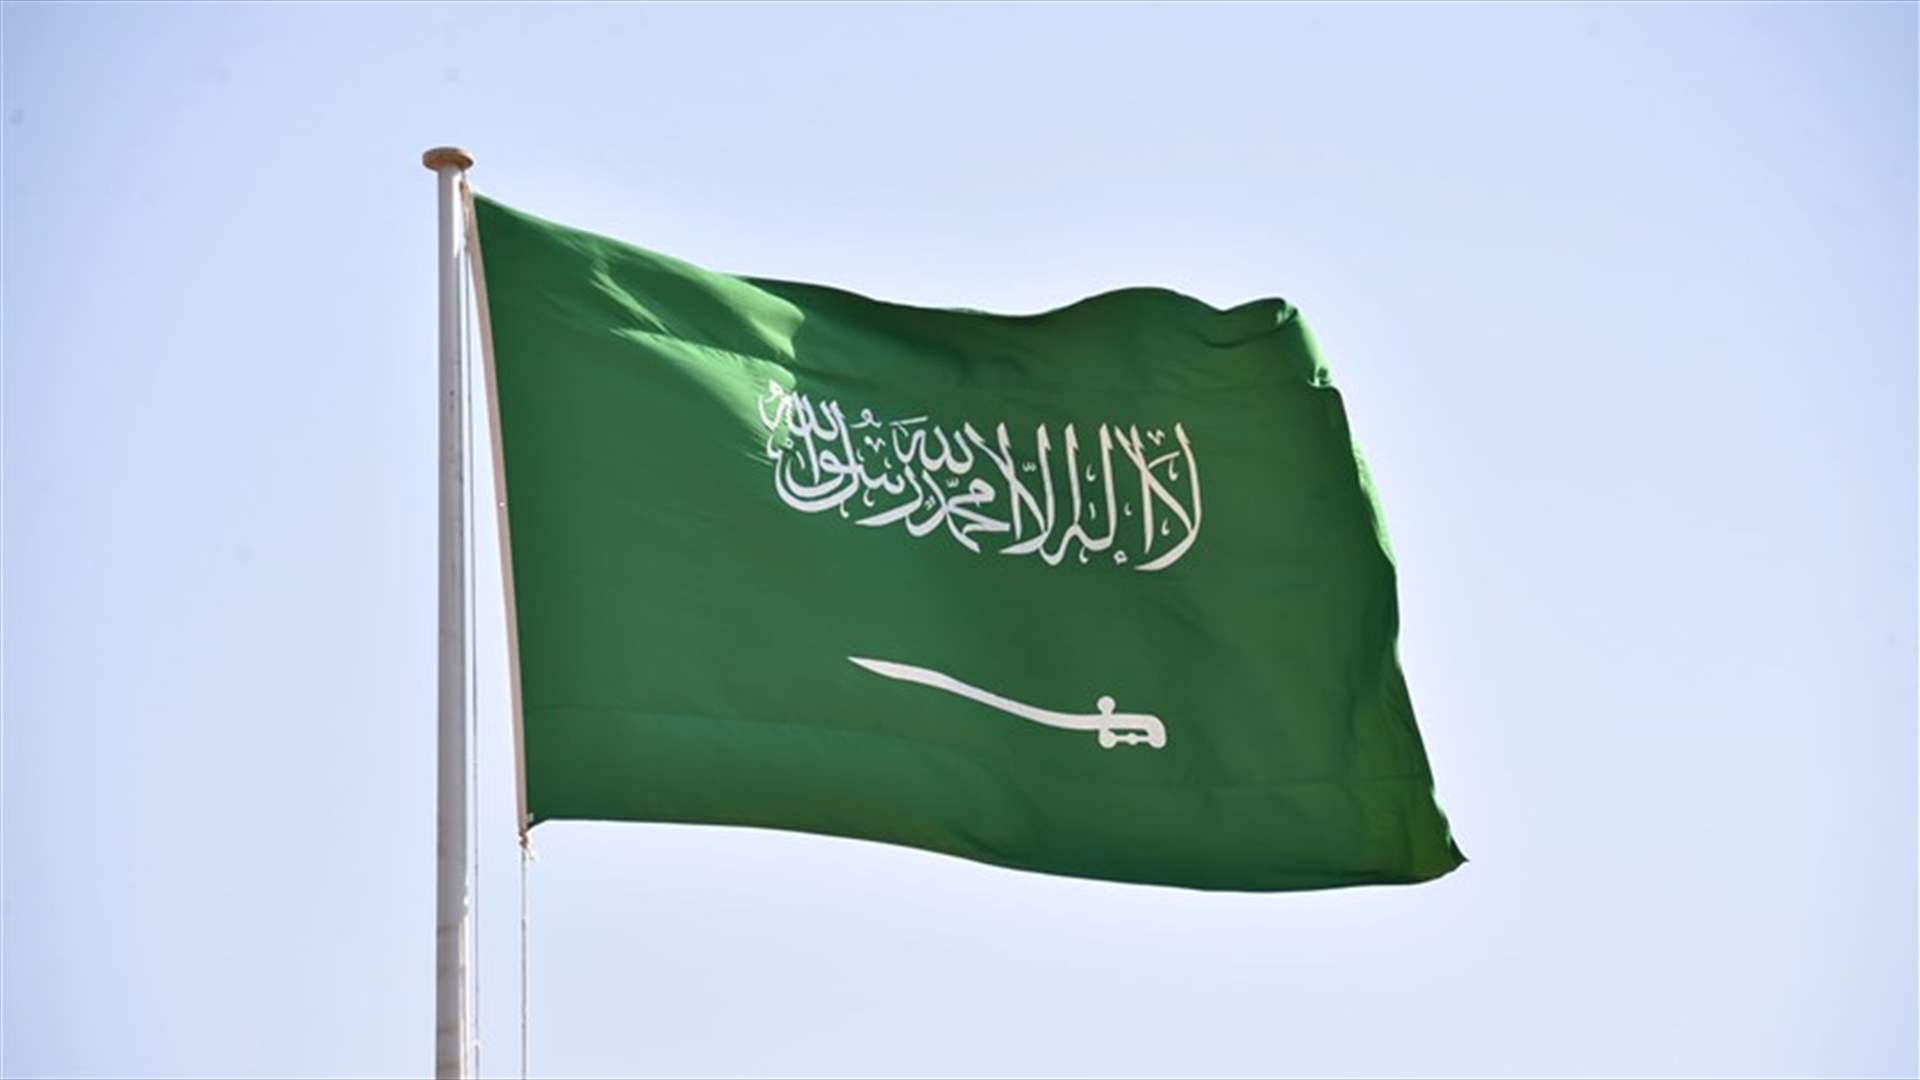 السعودية تطمح إلى مضاعفة عدد السُيّاح بحلول العام 2030 